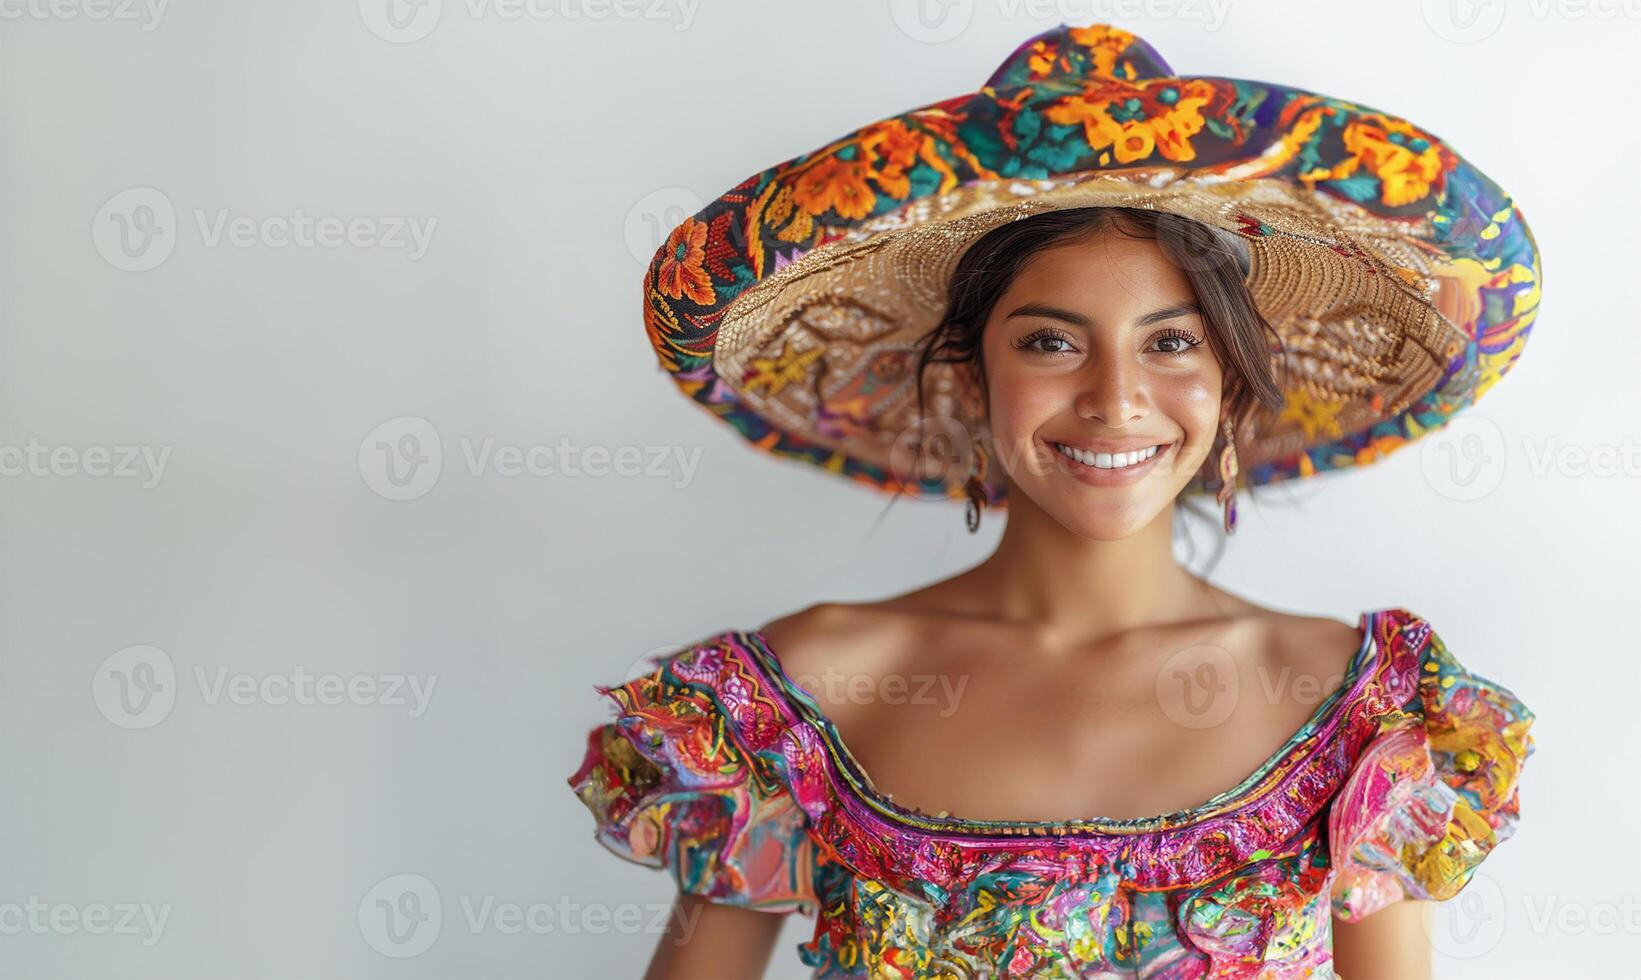 vrolijk Mexicaans dame in traditioneel jurk en hoed foto